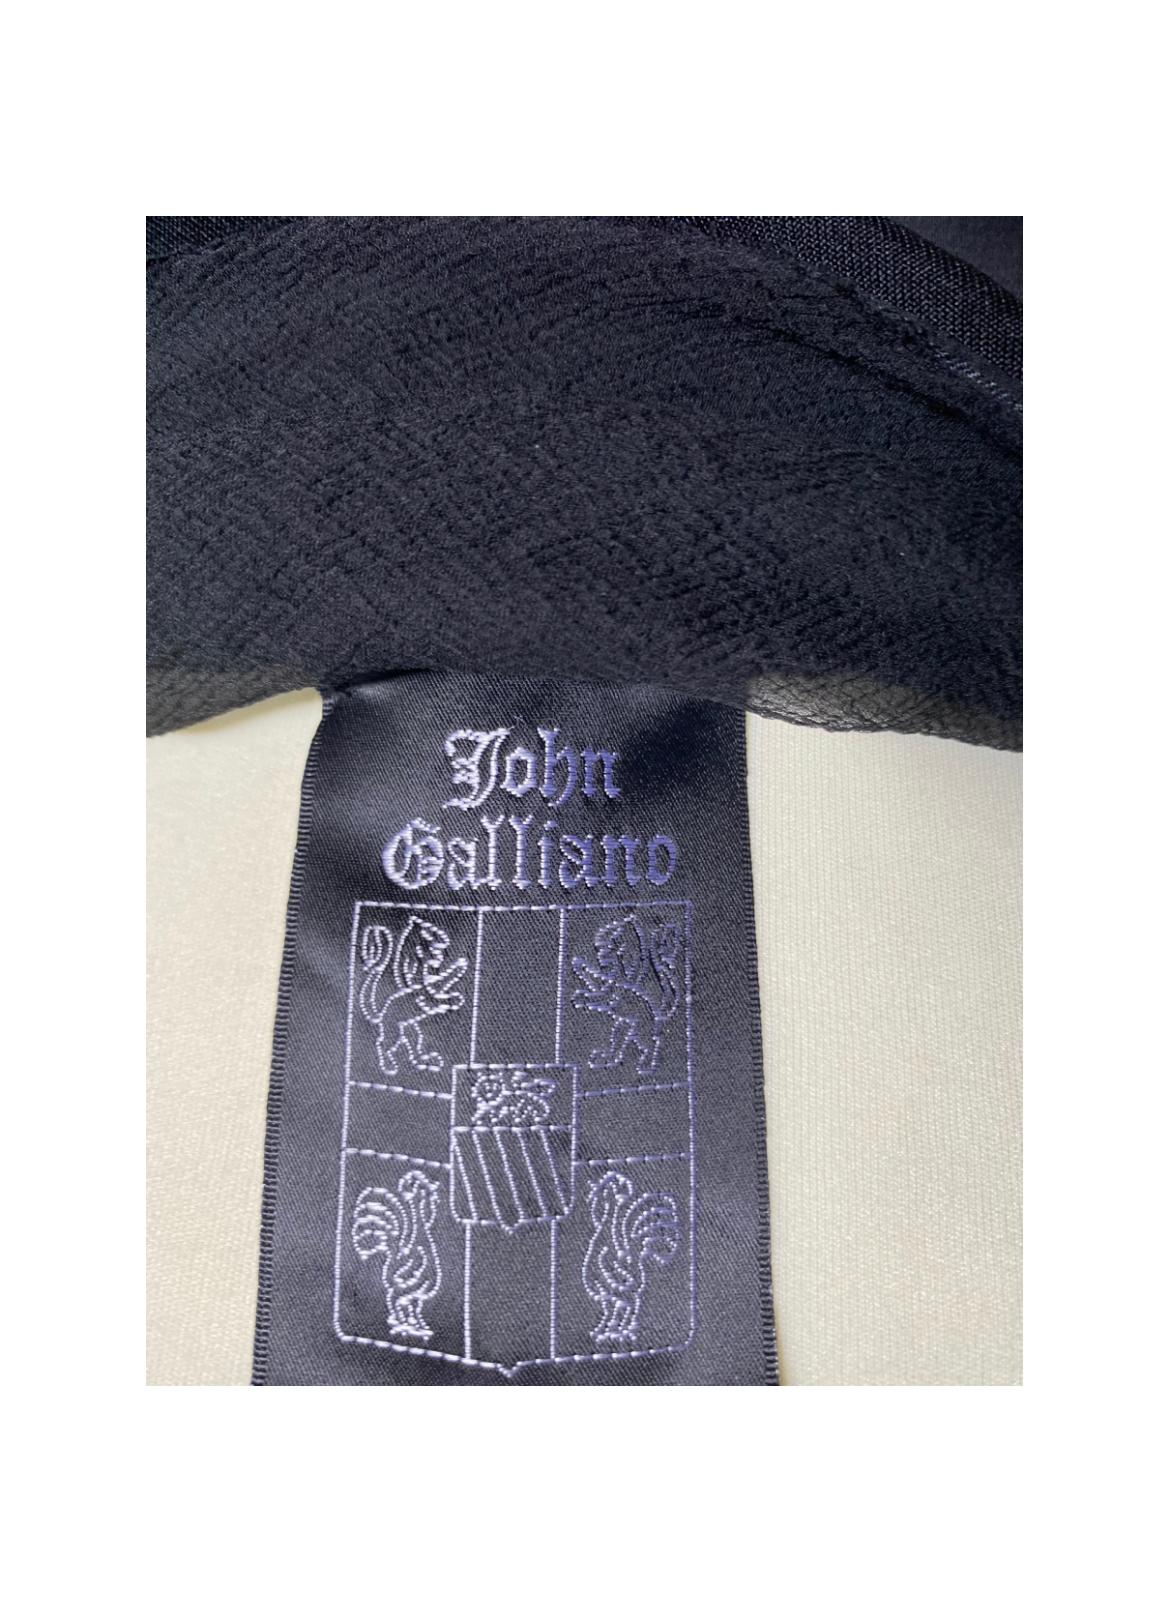 Abendkleid von John Galliano. Fashion Show 1994, ebenfalls im Met Museum ausgestellt. Aus Seide, schwarzer Stretch, mit verschiedenen Trägern.
 Angegebene Größe 38 Italienisch. Schultern 32cm, Taille 30cm, Brust 32cm, Oberlänge 140cm.
In sehr gutem